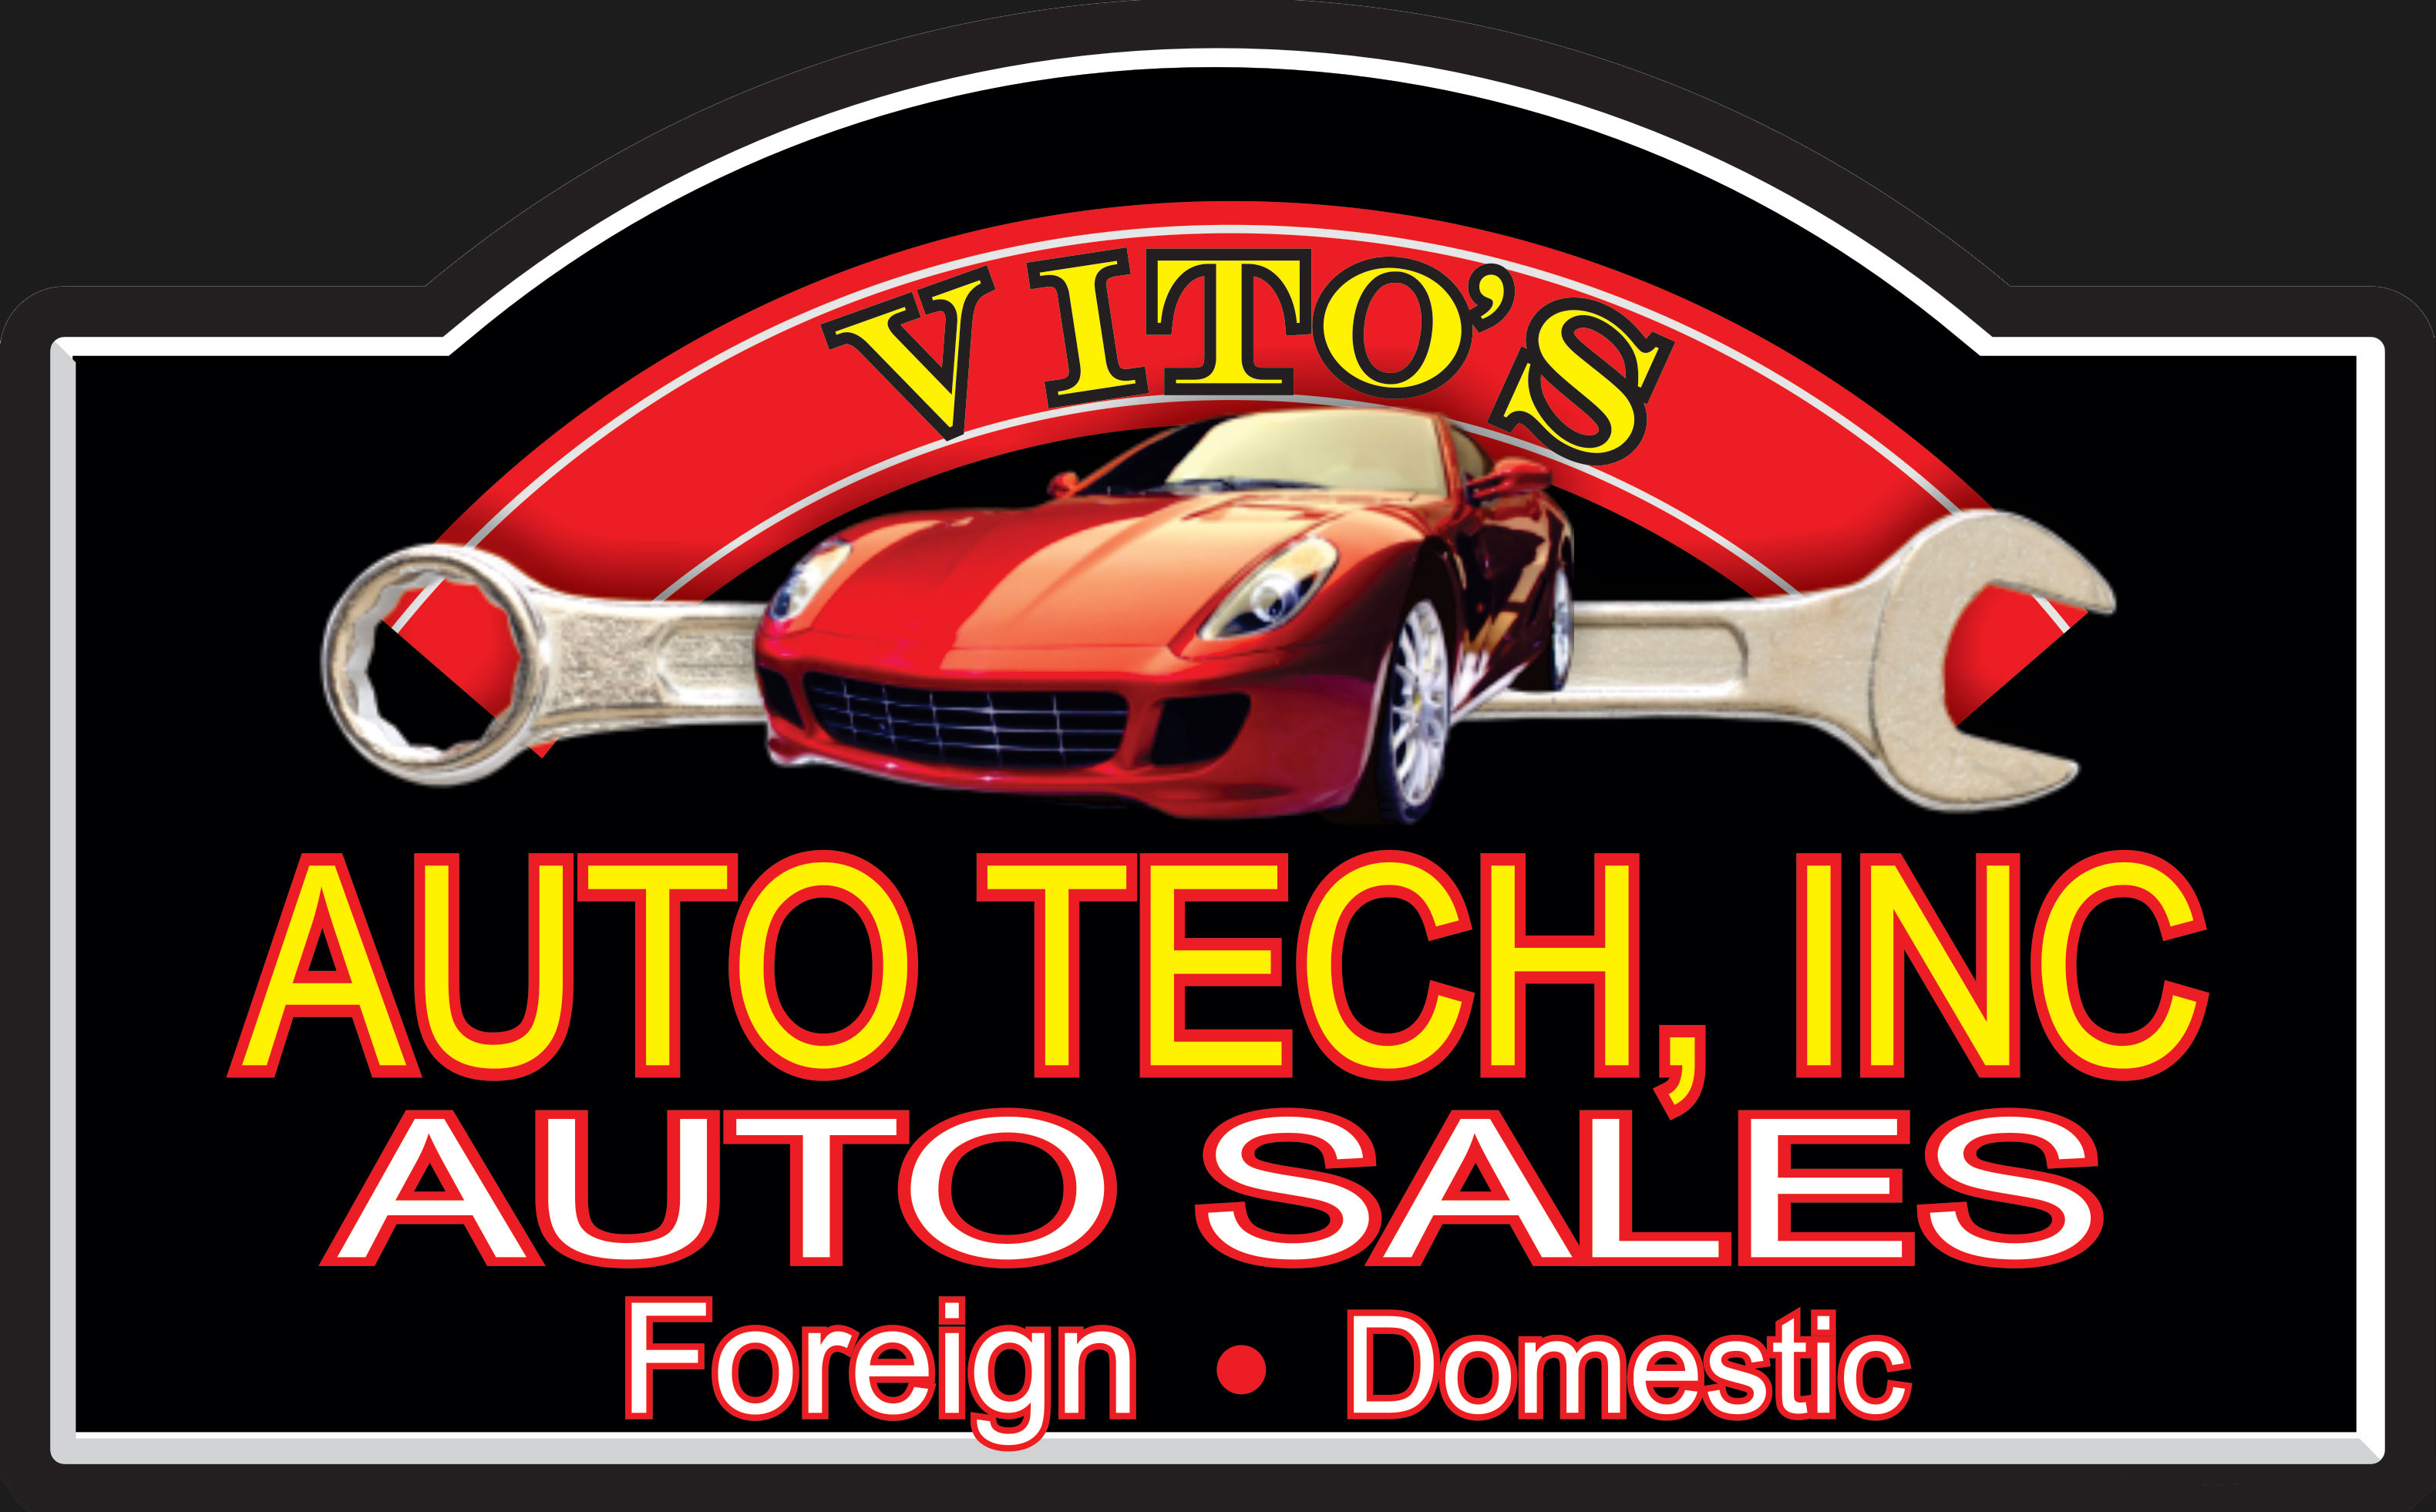 Vito's Auto Tech